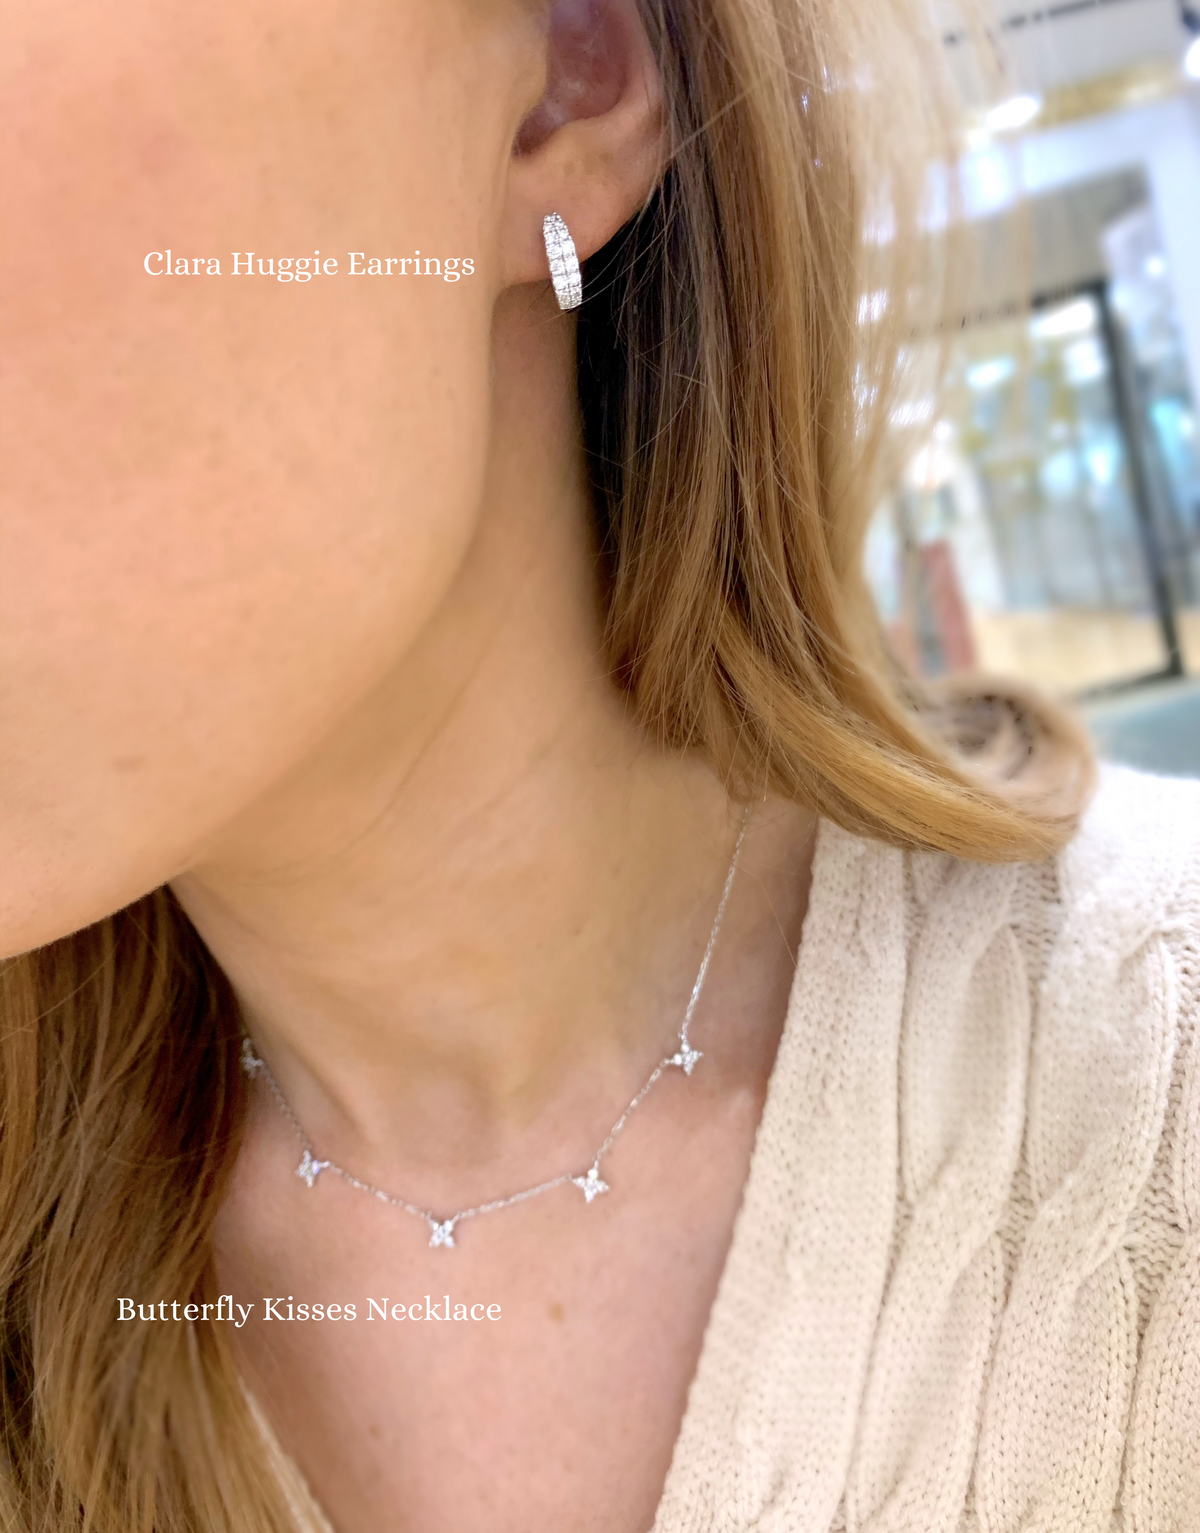 Butterfly Kisses Diamond Drop Necklace + Clara Huggie Earrings